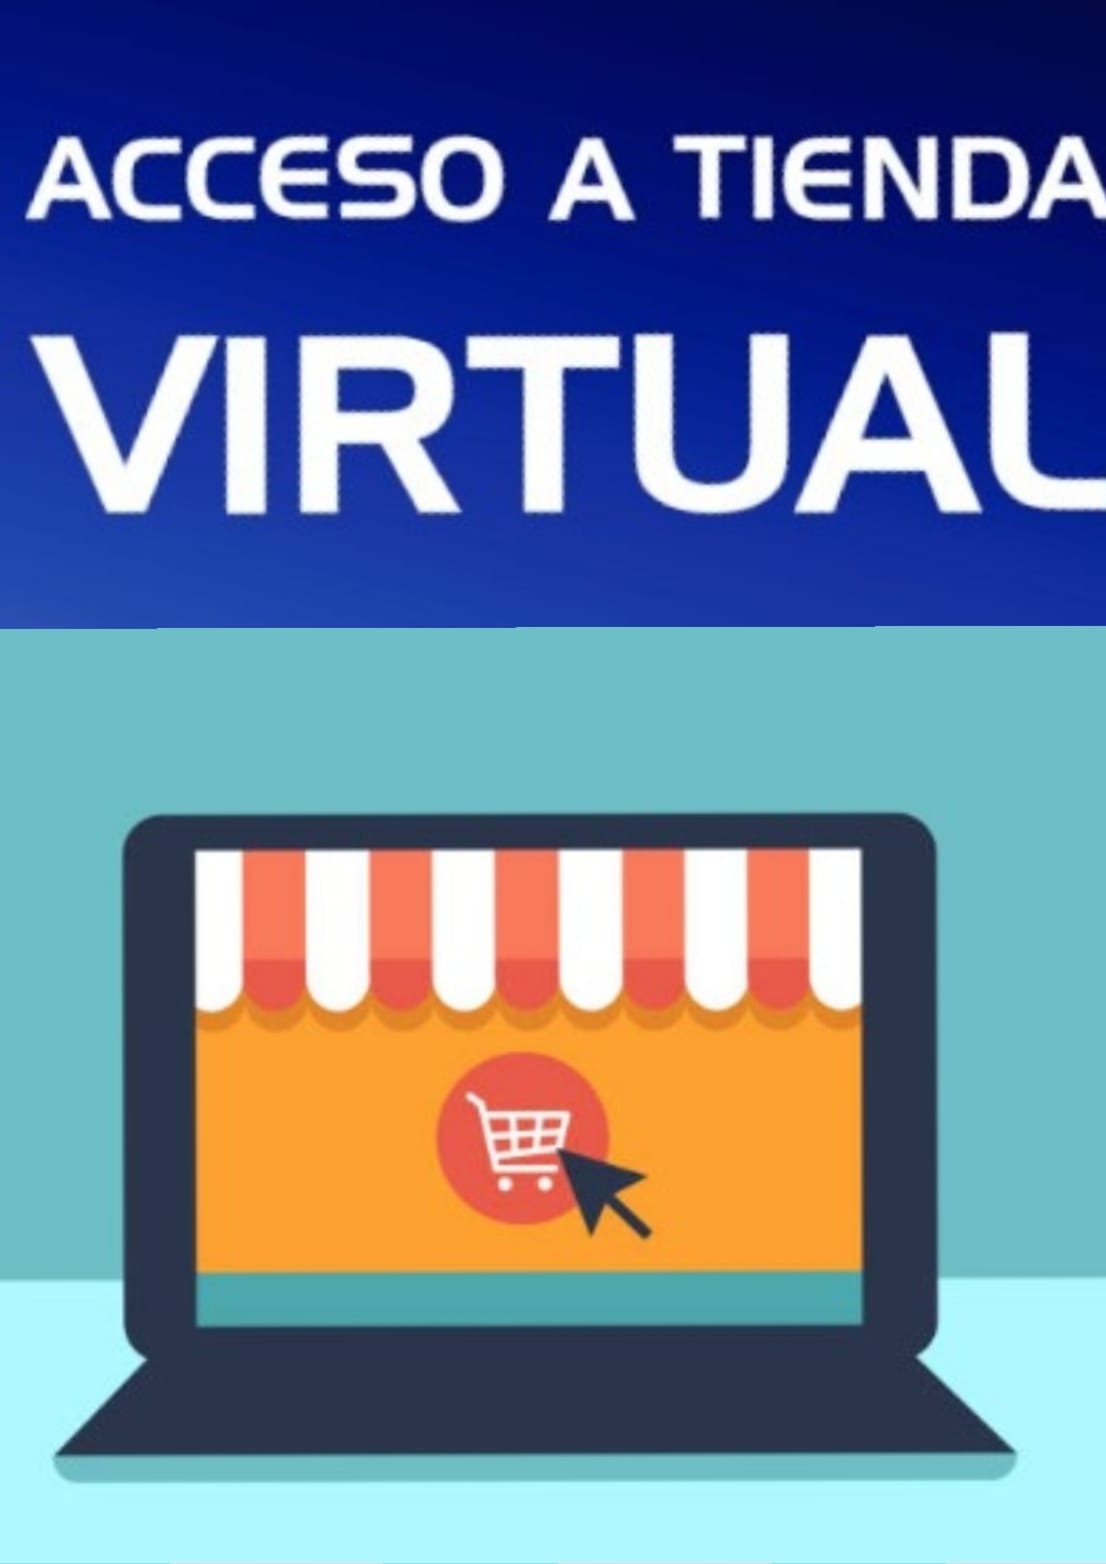 acceso a tienda virtual